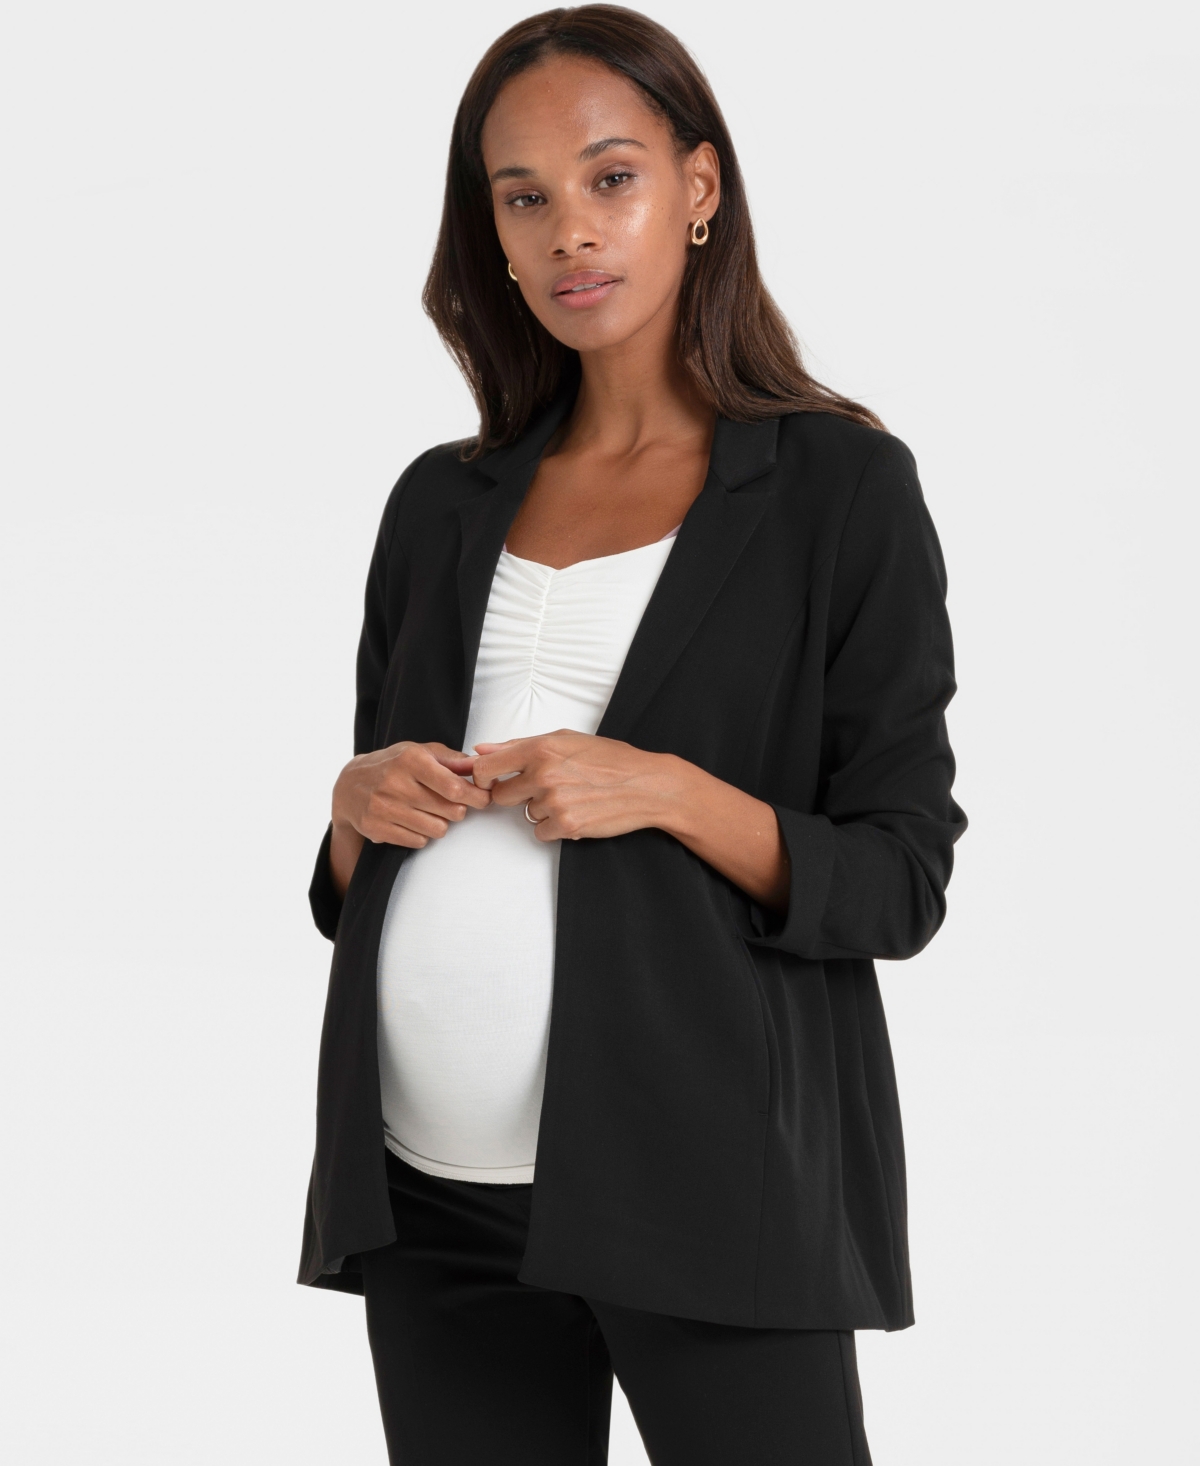 Seraphine Women's Corporate Maternity Blazer In Black